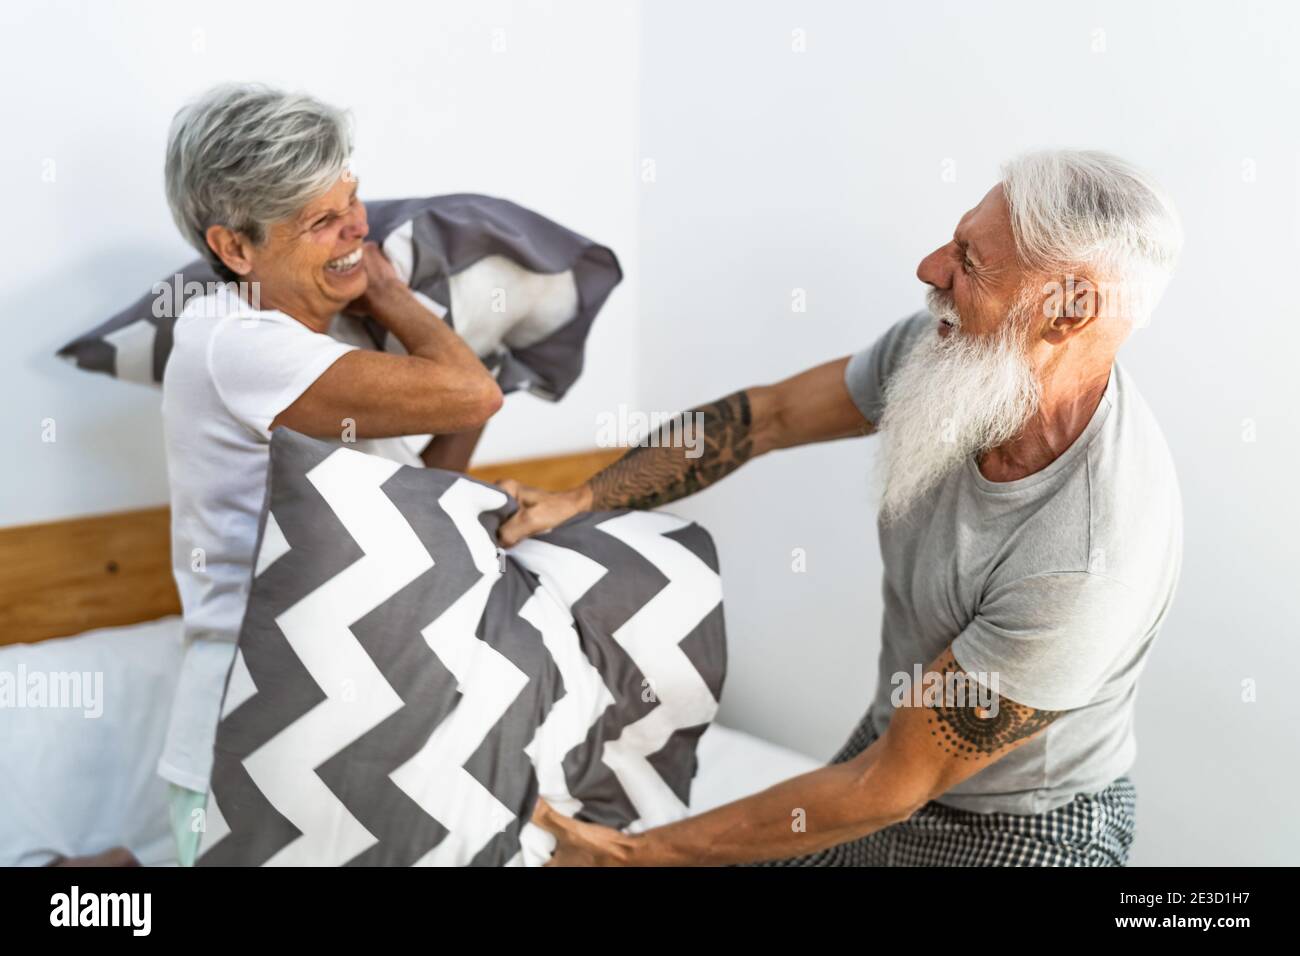 Un couple senior heureux s'est amusé à se battre avec des oreillers dans le lit - concept de mode de vie et de relation d'amour des personnes âgées Banque D'Images